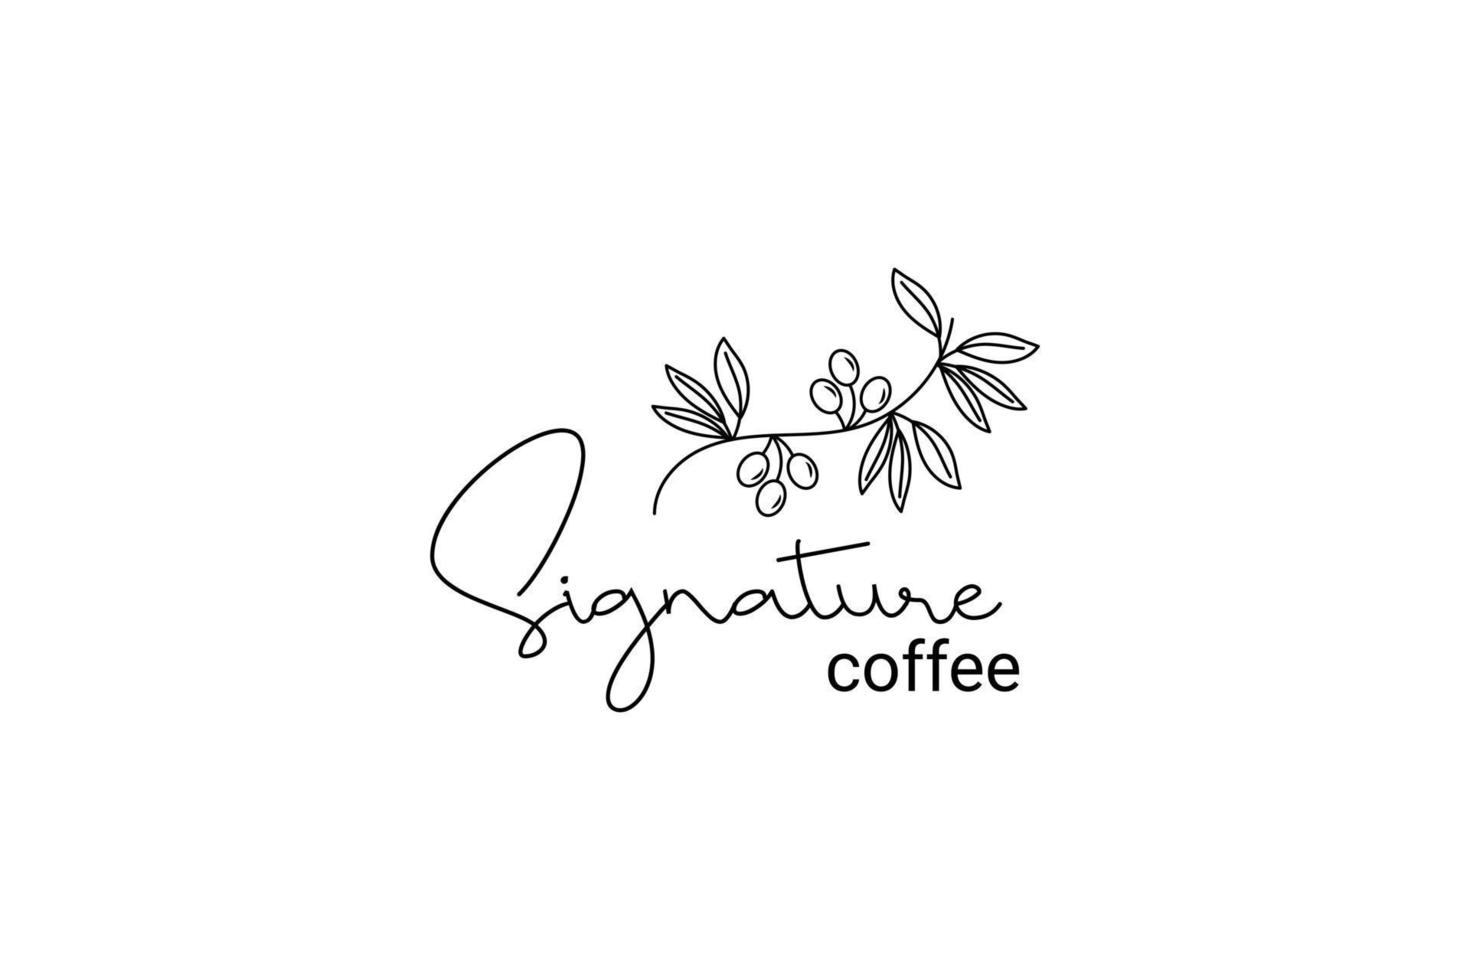 prima café planta logo inspiración con hojas para cafe vector